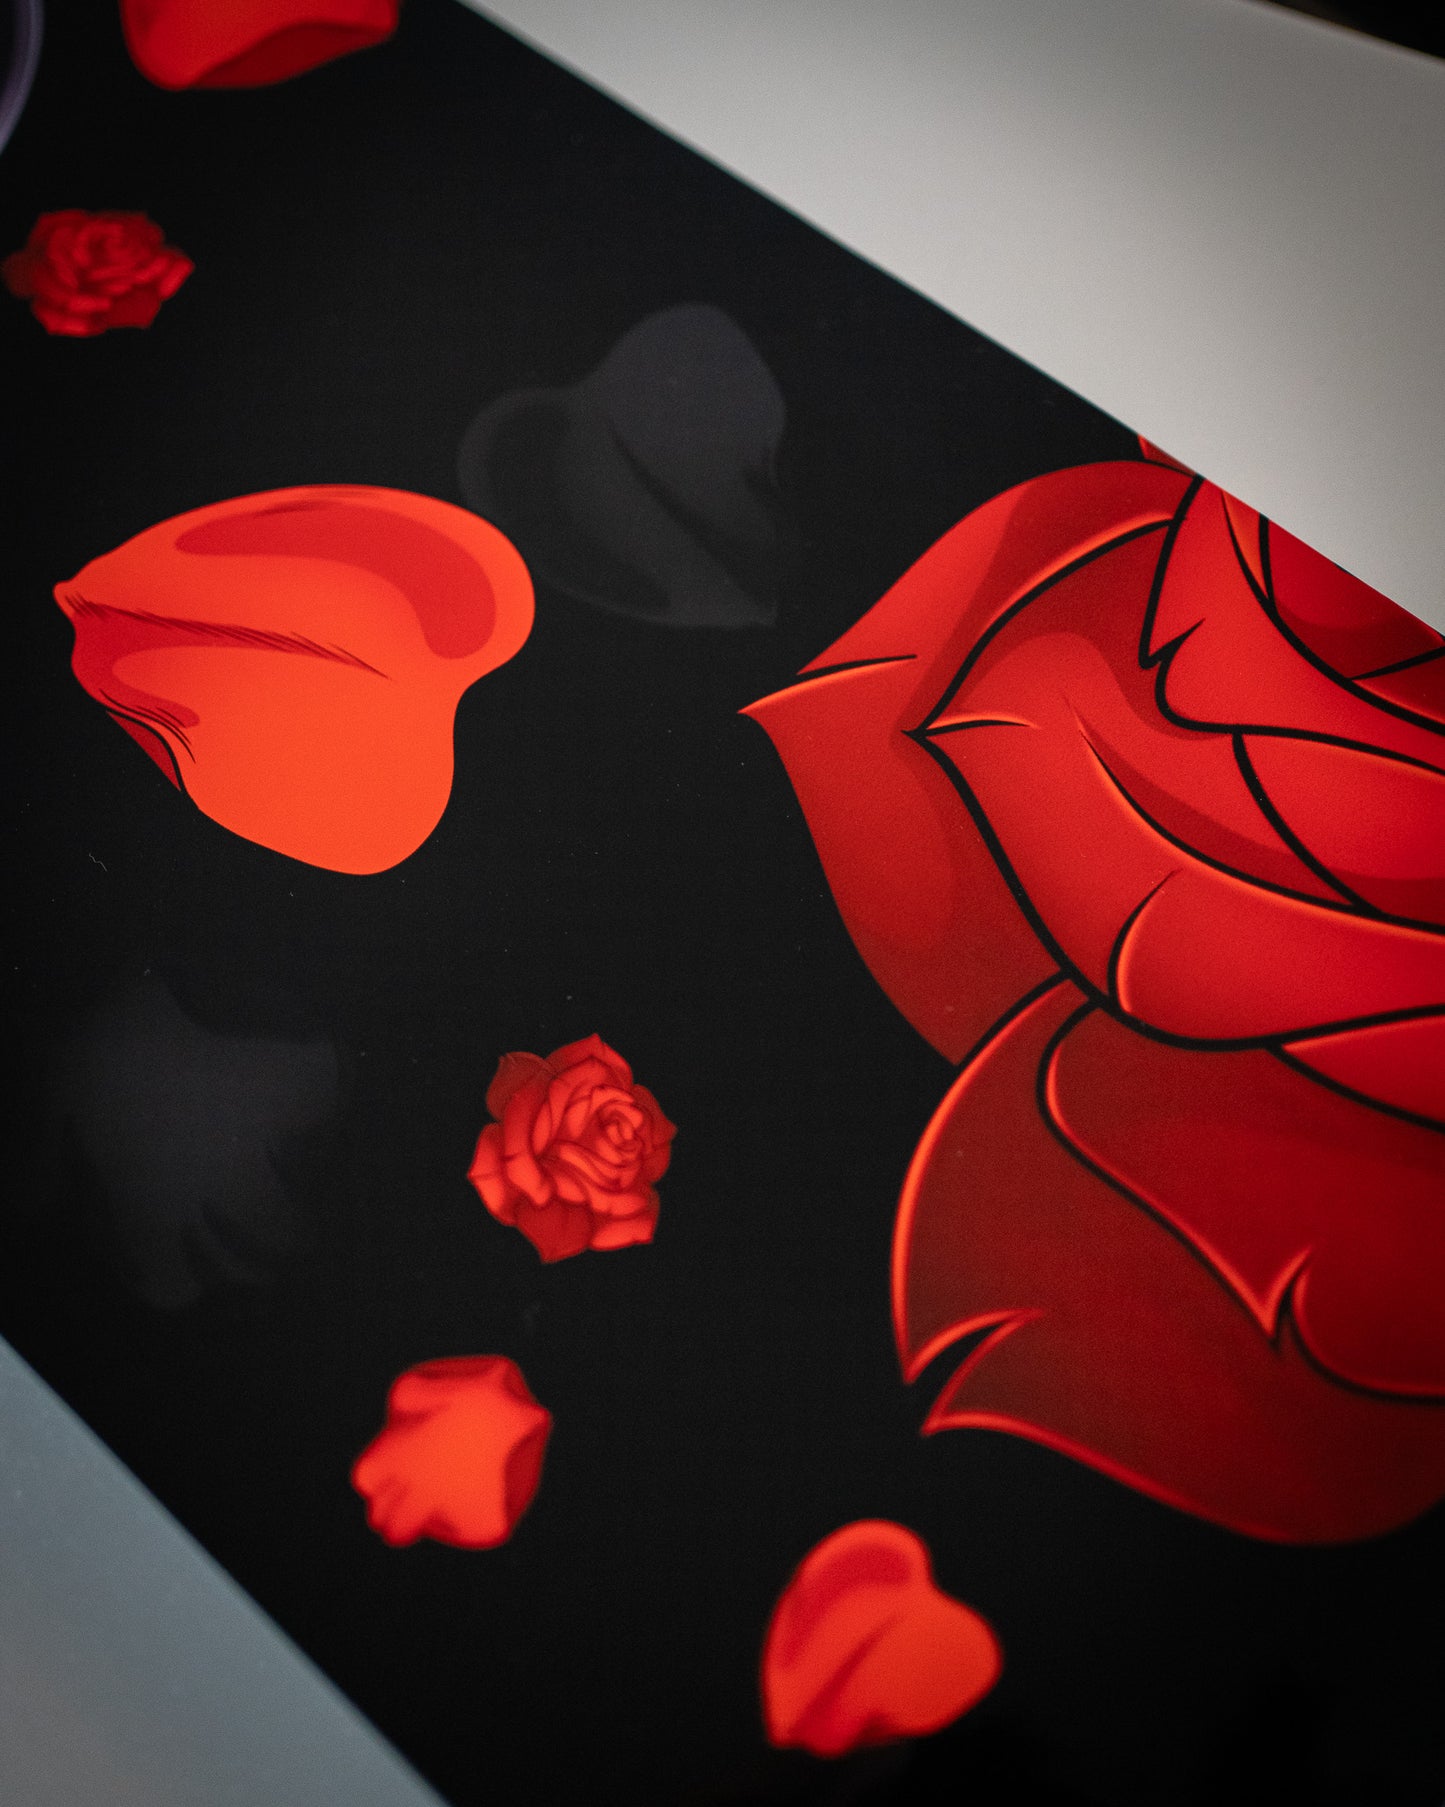 Kaguya Shinomiya “Love is War” Rose Banner